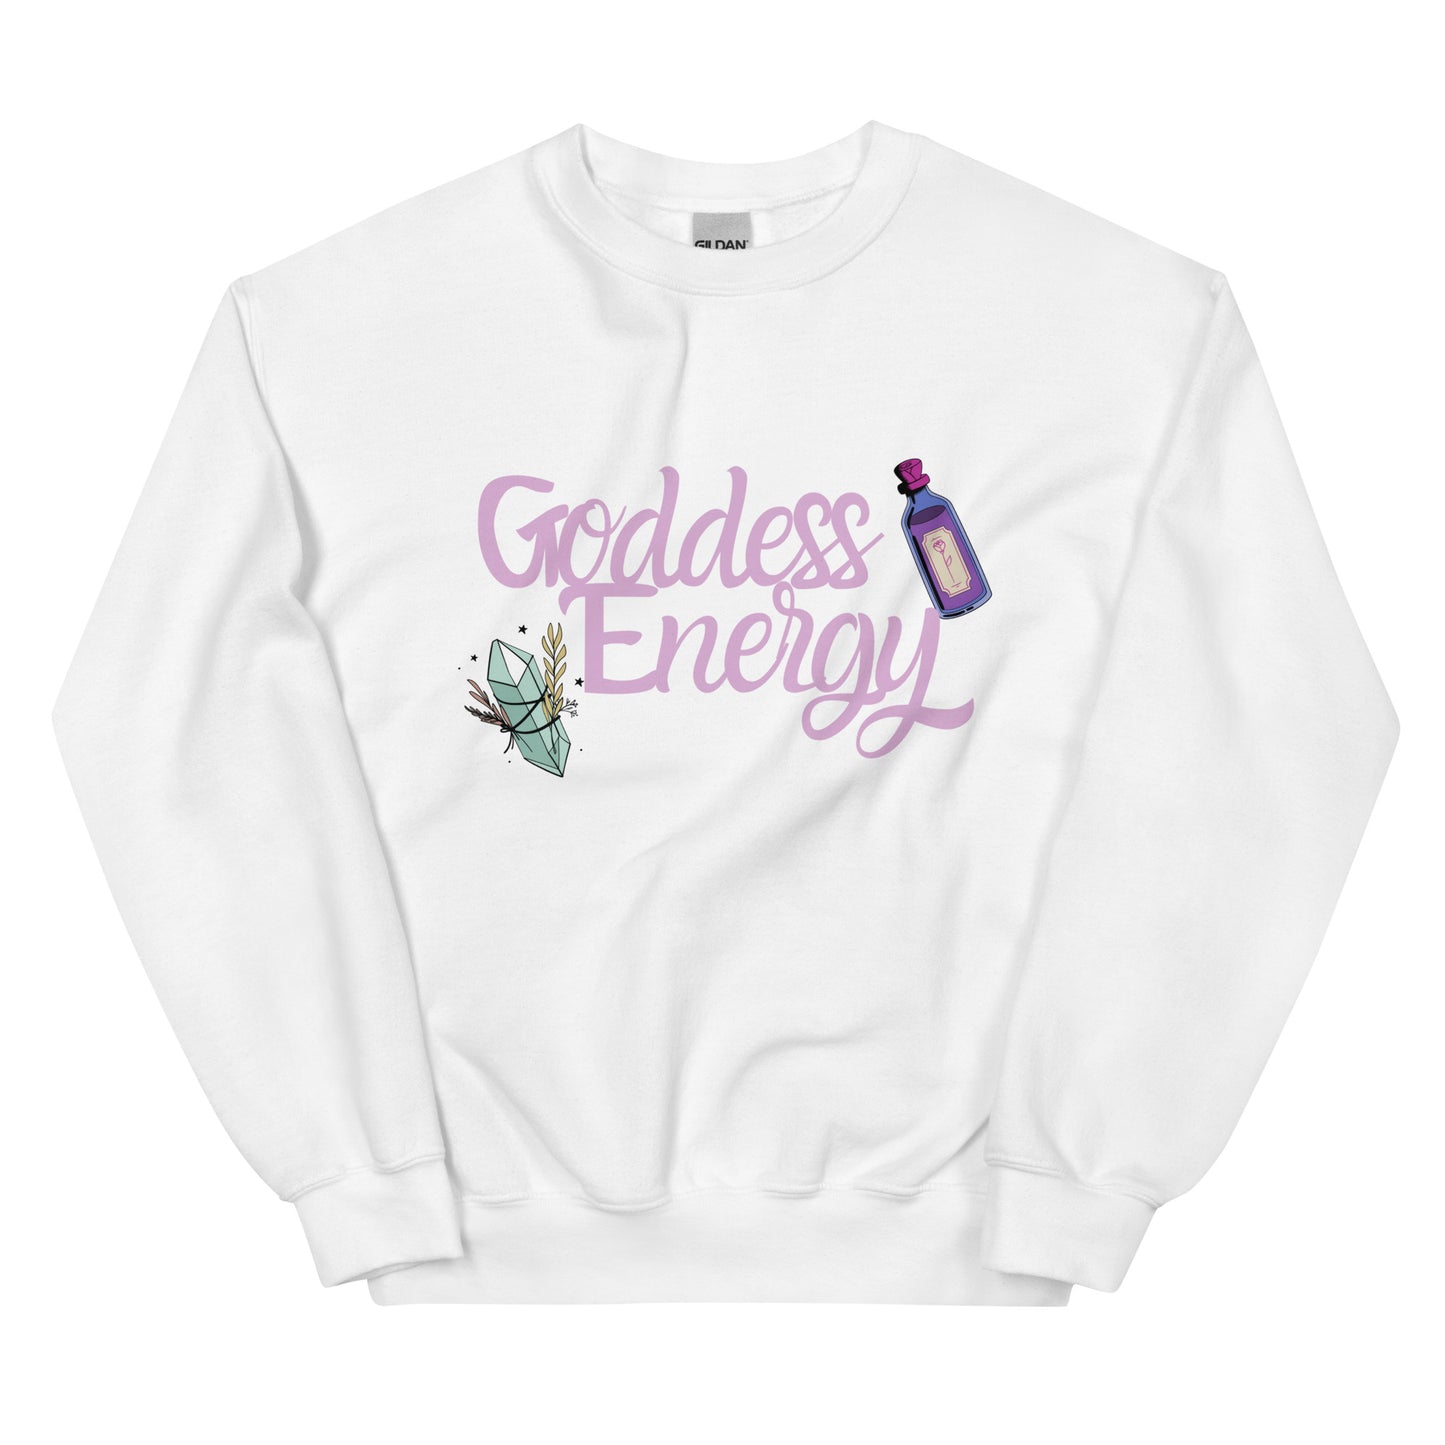 Goddess Energy Sweatshirt